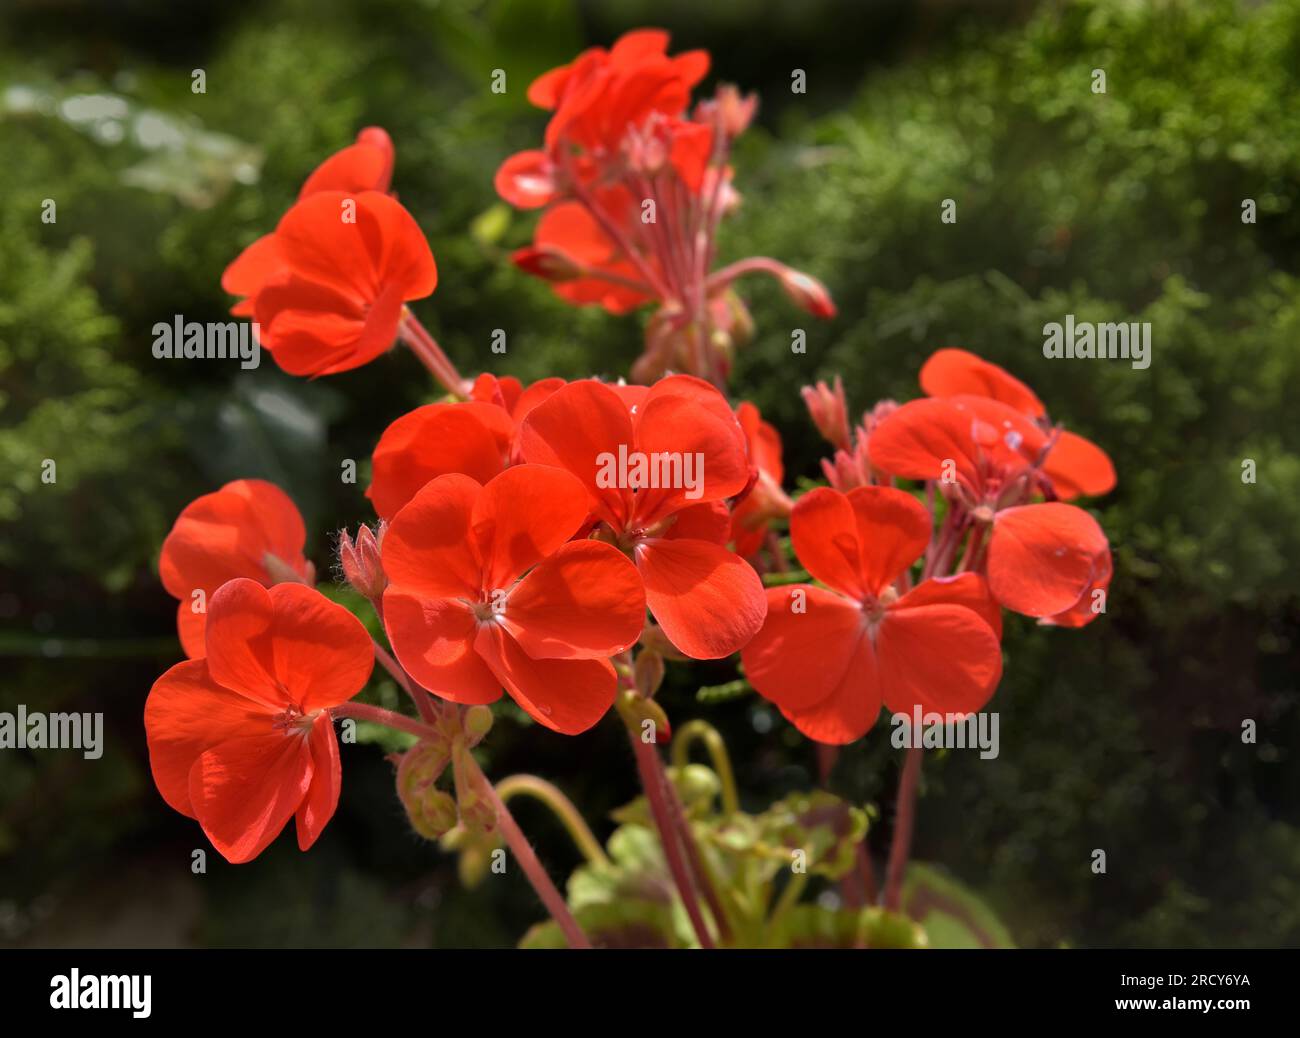 Flowering Red geranium plant Stock Photo